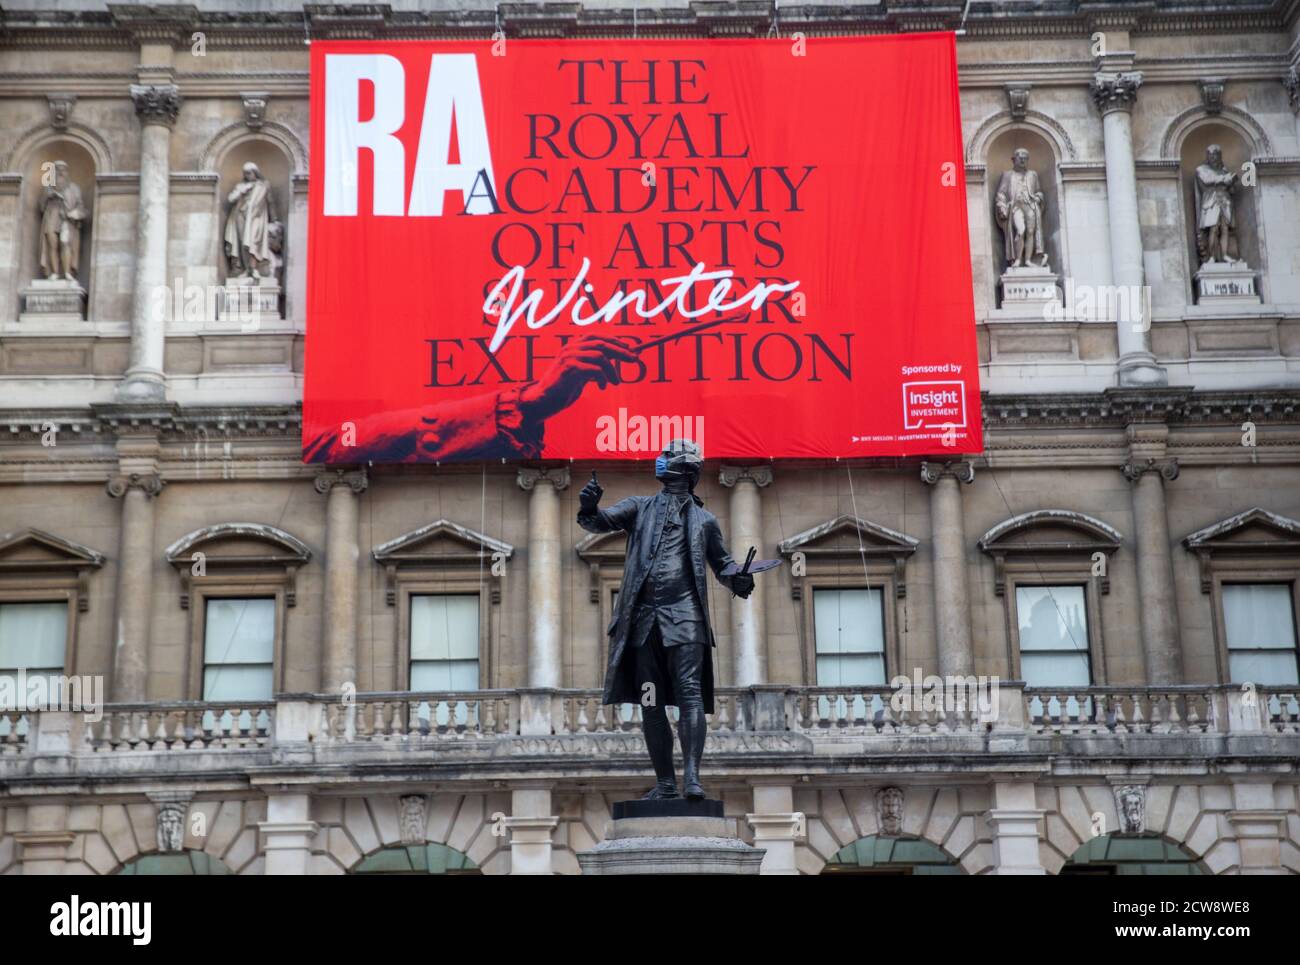 Statue von Sir Joshua Reynolds, dem ersten Präsidenten der Königlichen Akademie. Pressevorstellung der Sommerausstellung in der Royal Academy, die am 6. Oktober eröffnet wird Stockfoto